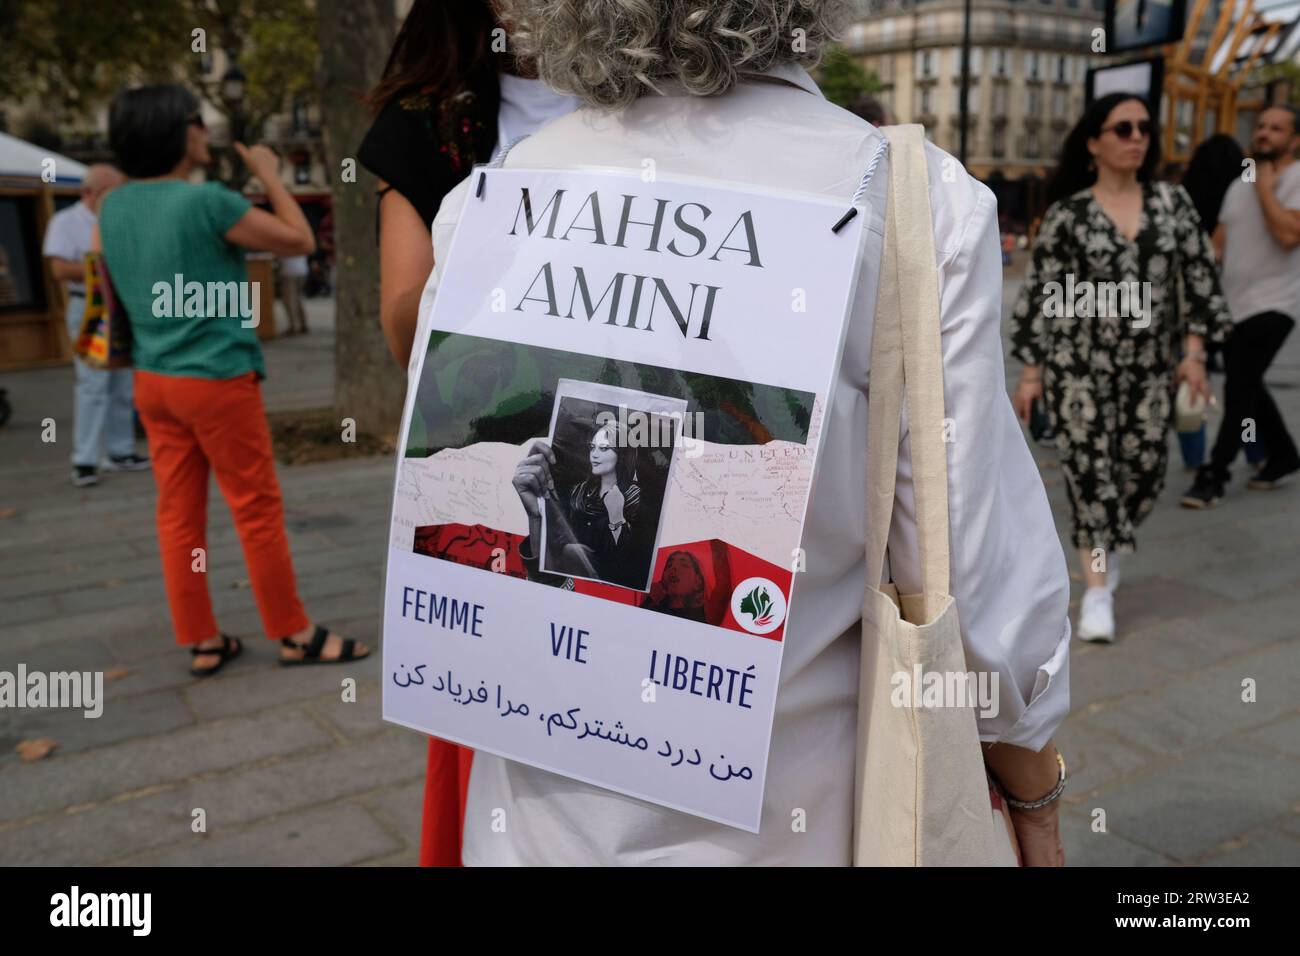 Manifestation à Paris pour le 1er anniversaire de la mort de Mahsa Amini en Iran.plusieurs centaines de personnes au départ du cortège à la Bastille Stockfoto